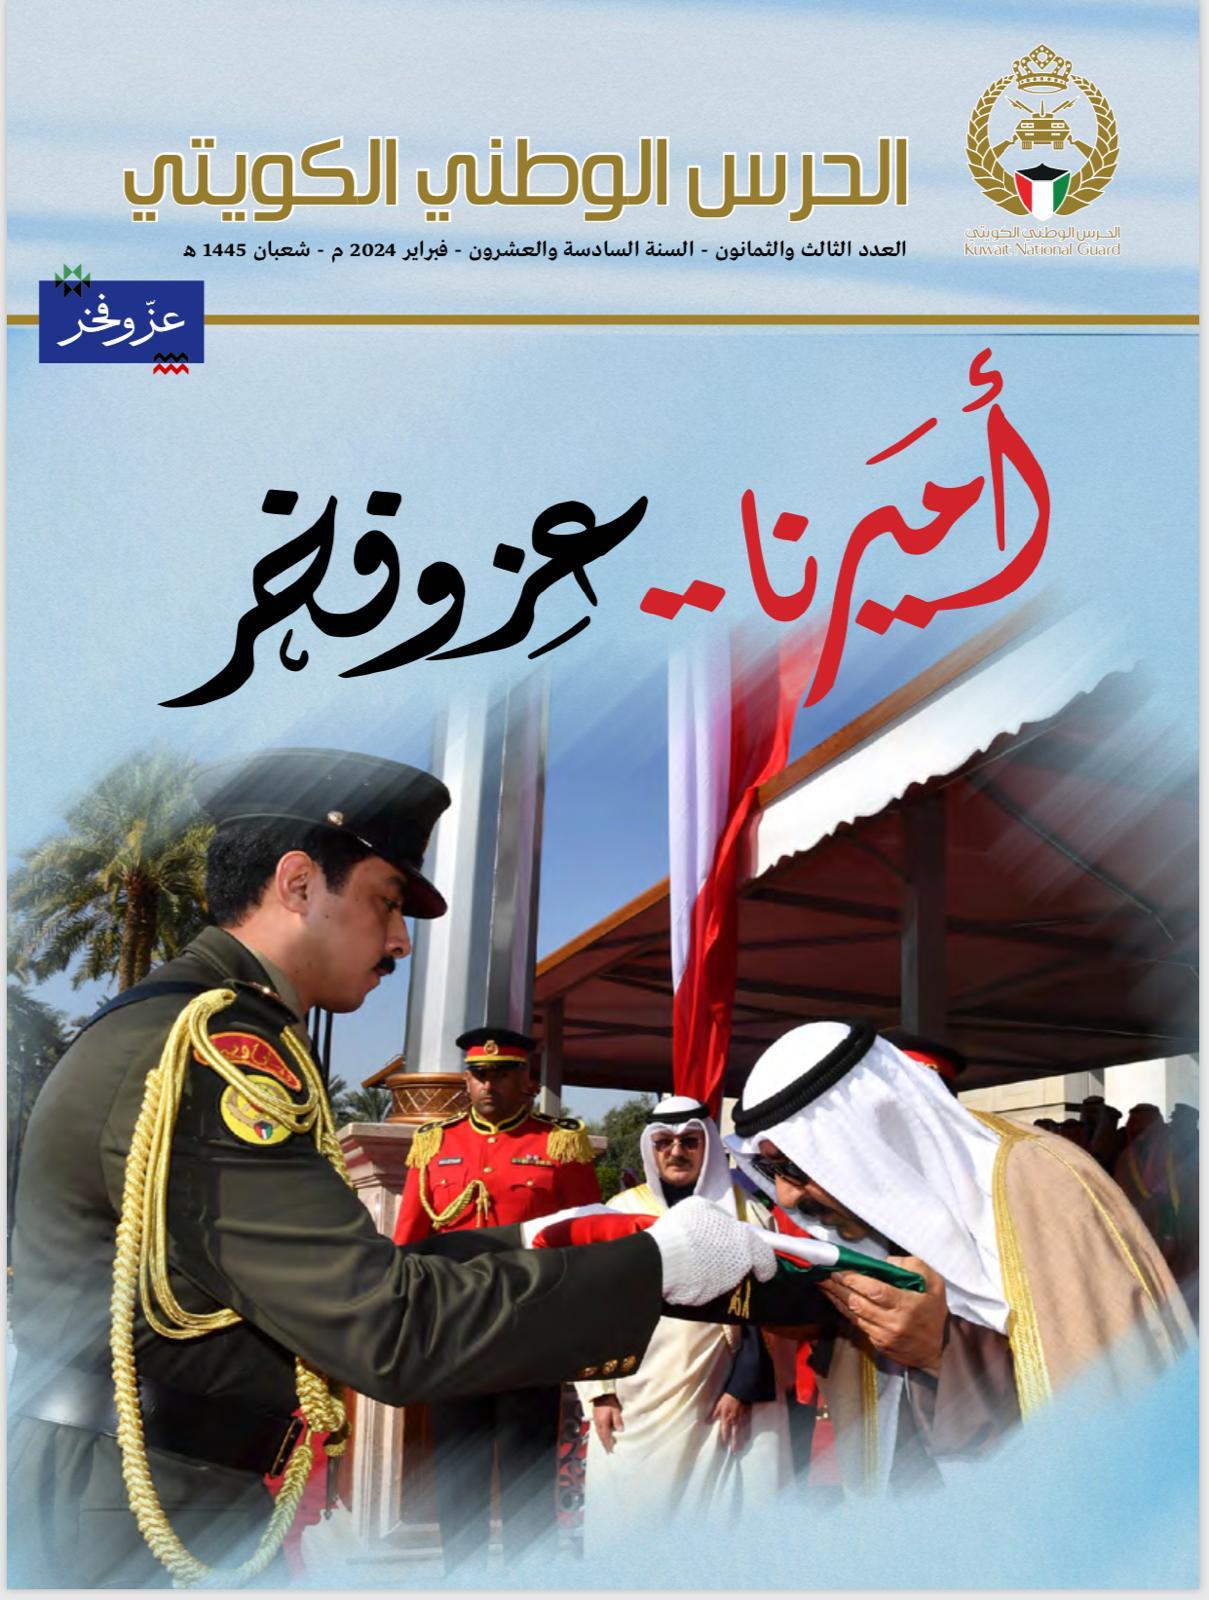  مجلة الحرس الوطني توثق احتفالات الكويت بالأعياد الوطنية : أميرنا عز وفخر    